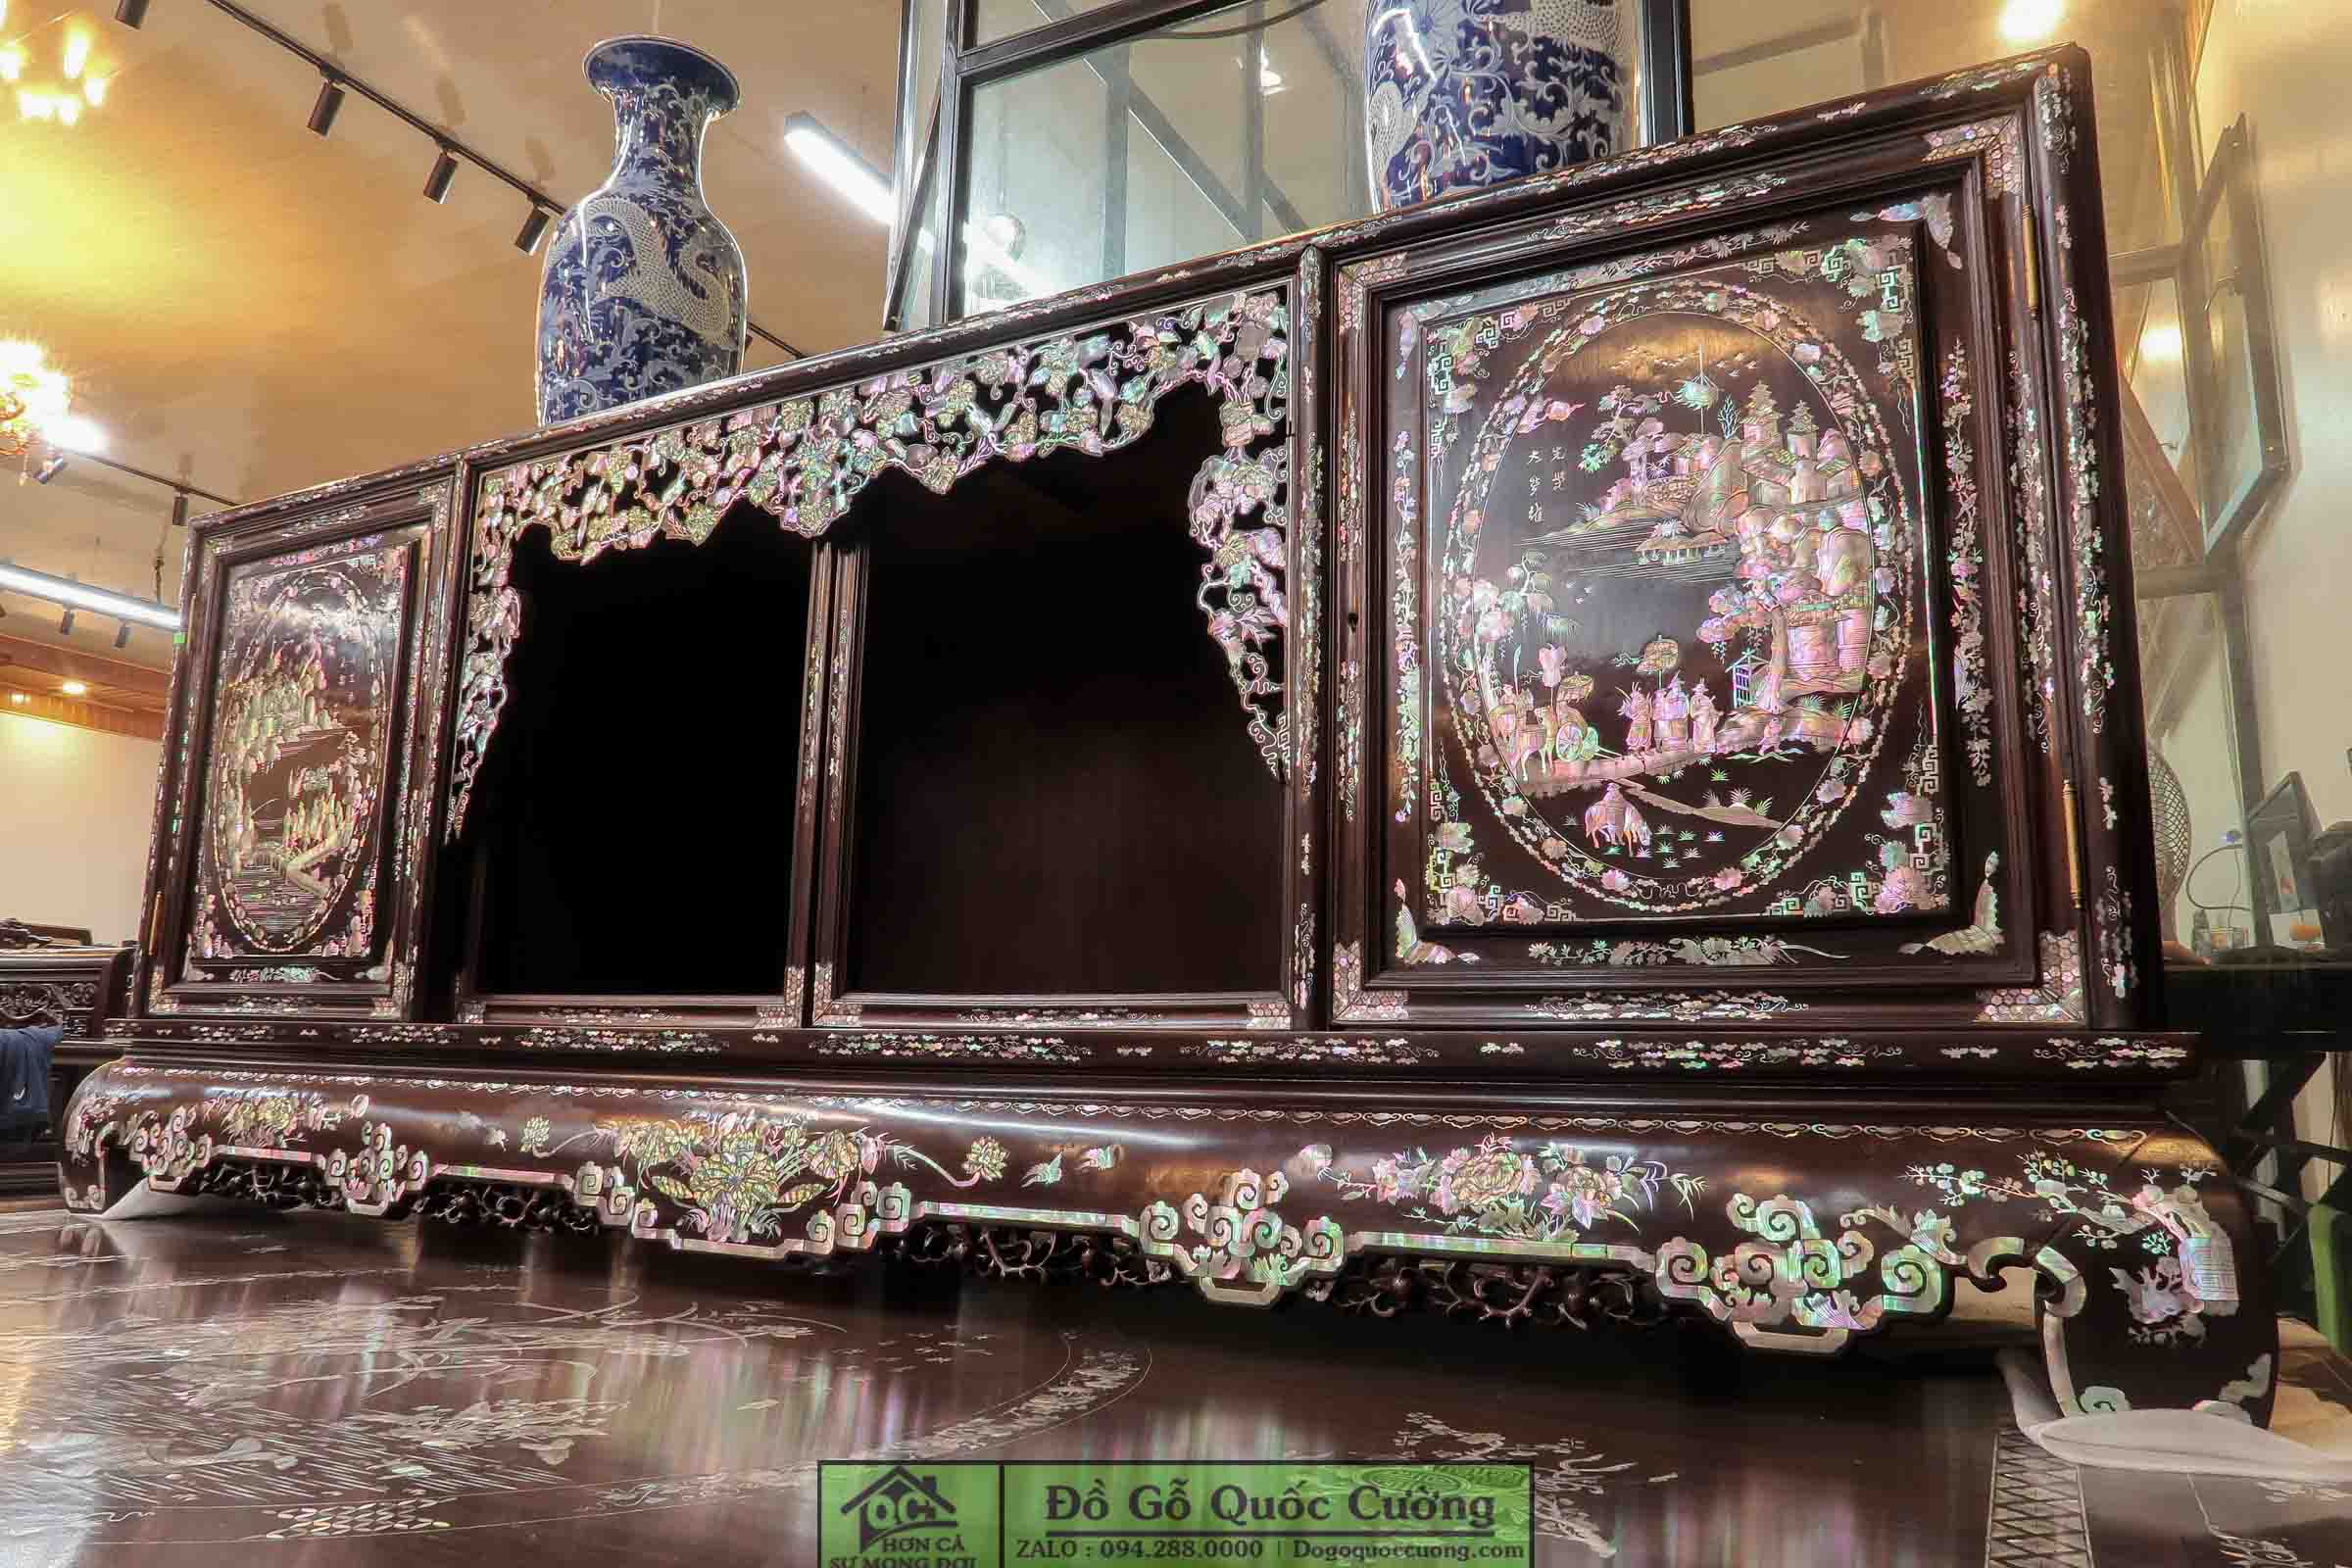 Sập gụ tủ chè gỗ gụ khảm liên chi - Bách Điểu Triều Phụng - Hàng cao cấp đang được trưng bày tại Dogoquoccuong